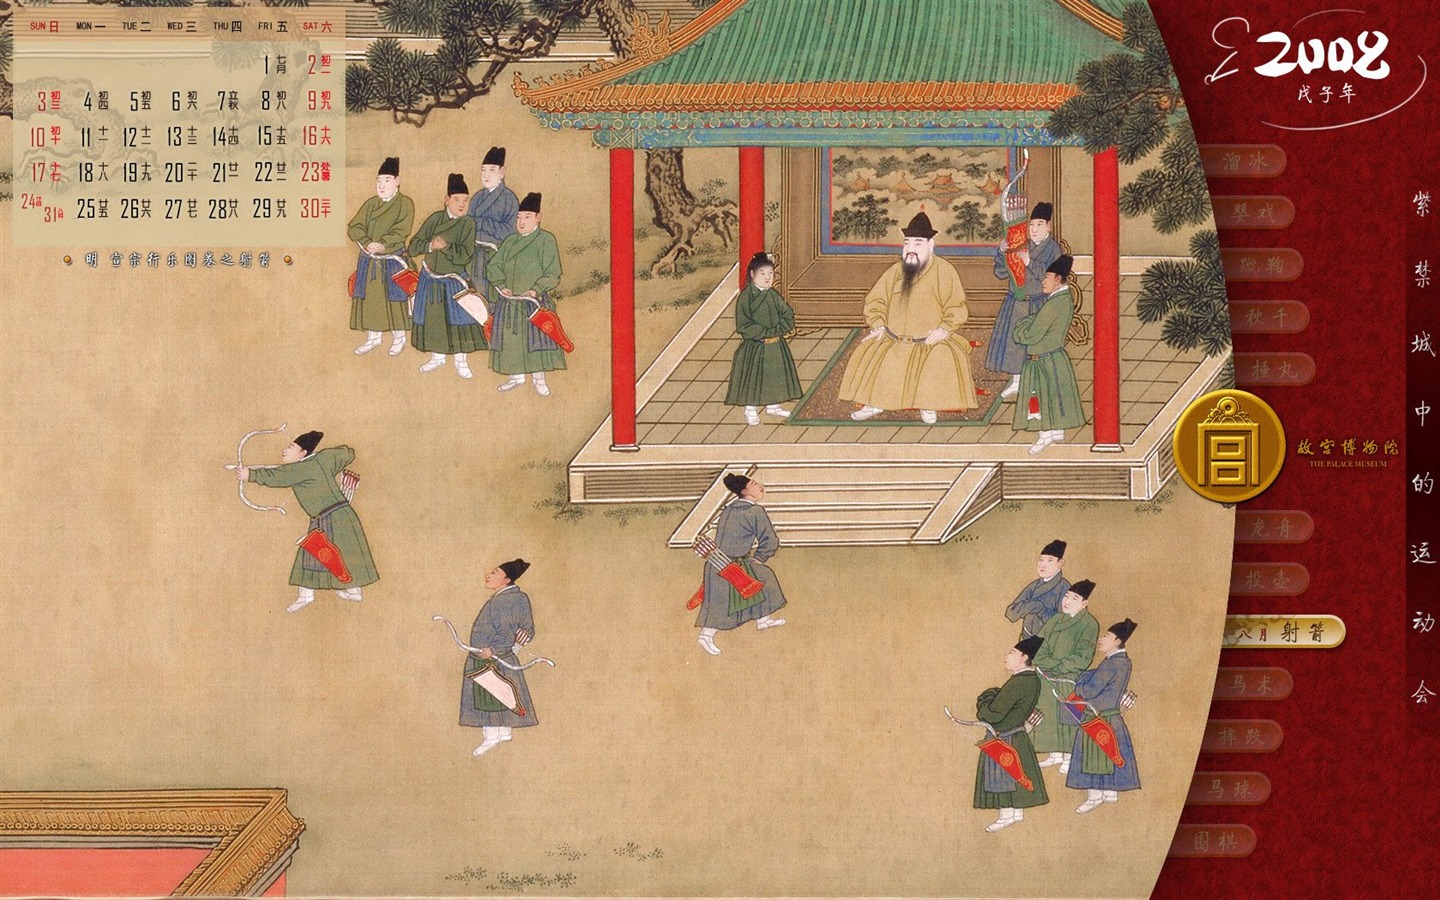 北京故宫博物院 文物展壁纸(二)10 - 1440x900